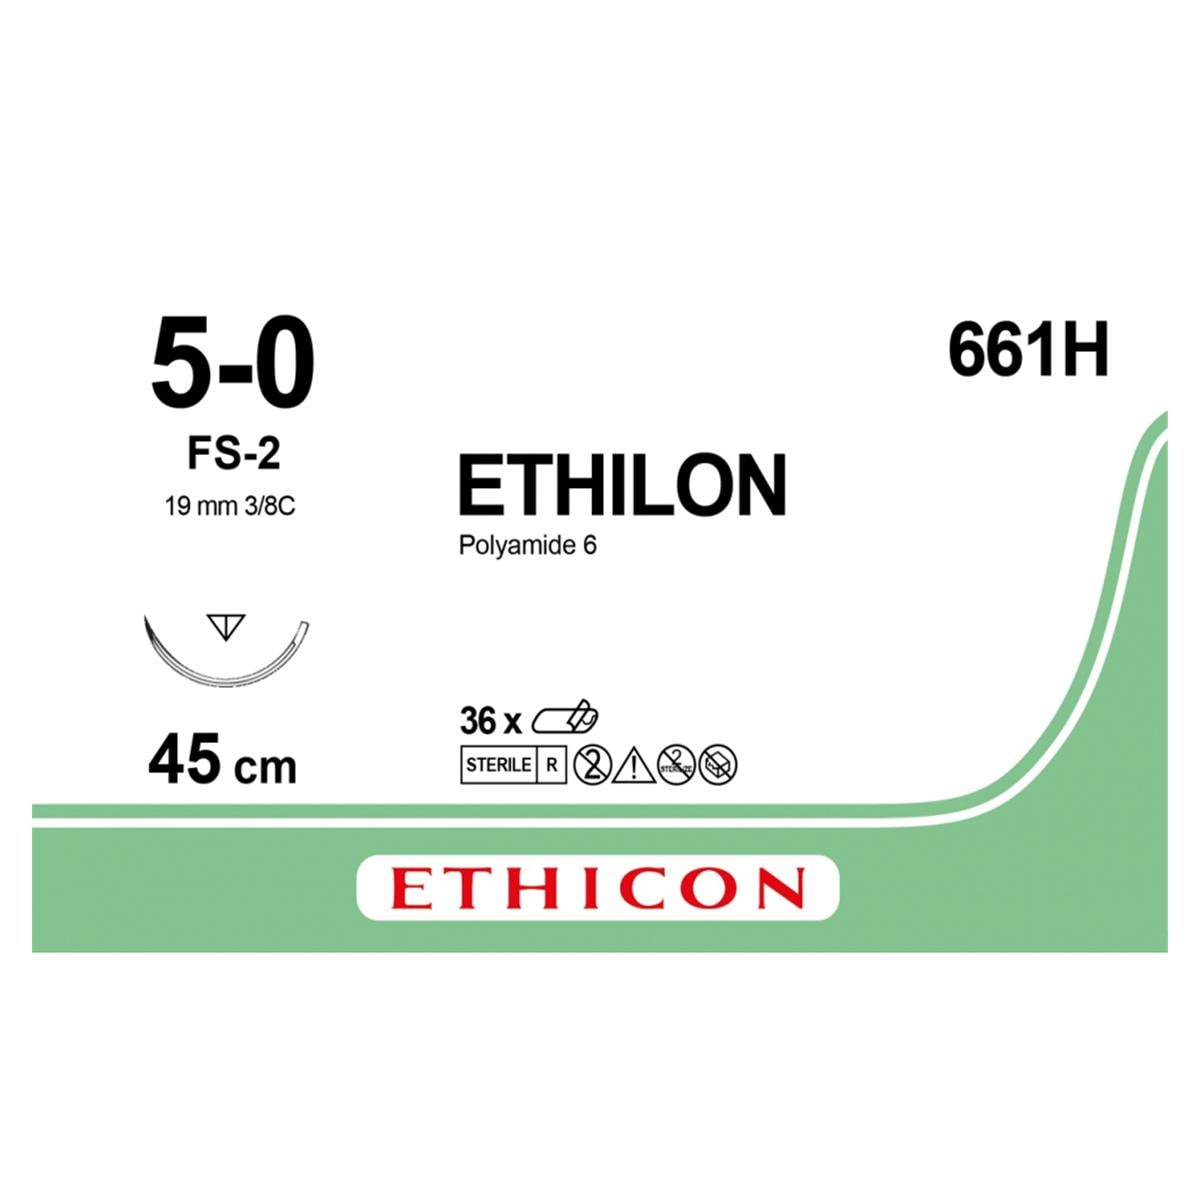 Ethilon - Lengte 45cm zwart, 36 stuks 5-0, naald FS-2 - 661H